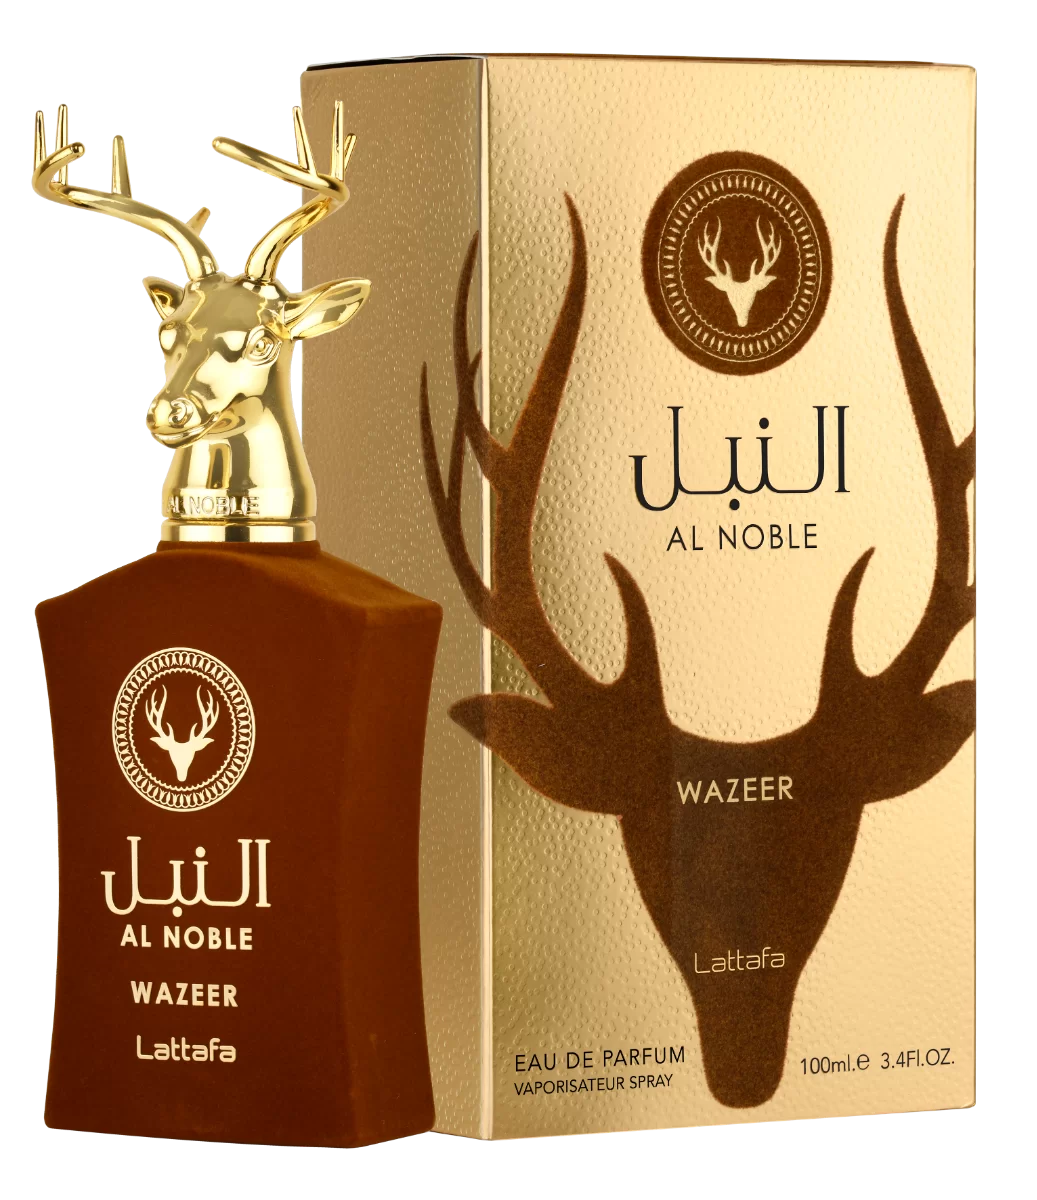 Lattafa Perfume Al Noble Wazeer Eau De Perfume.png